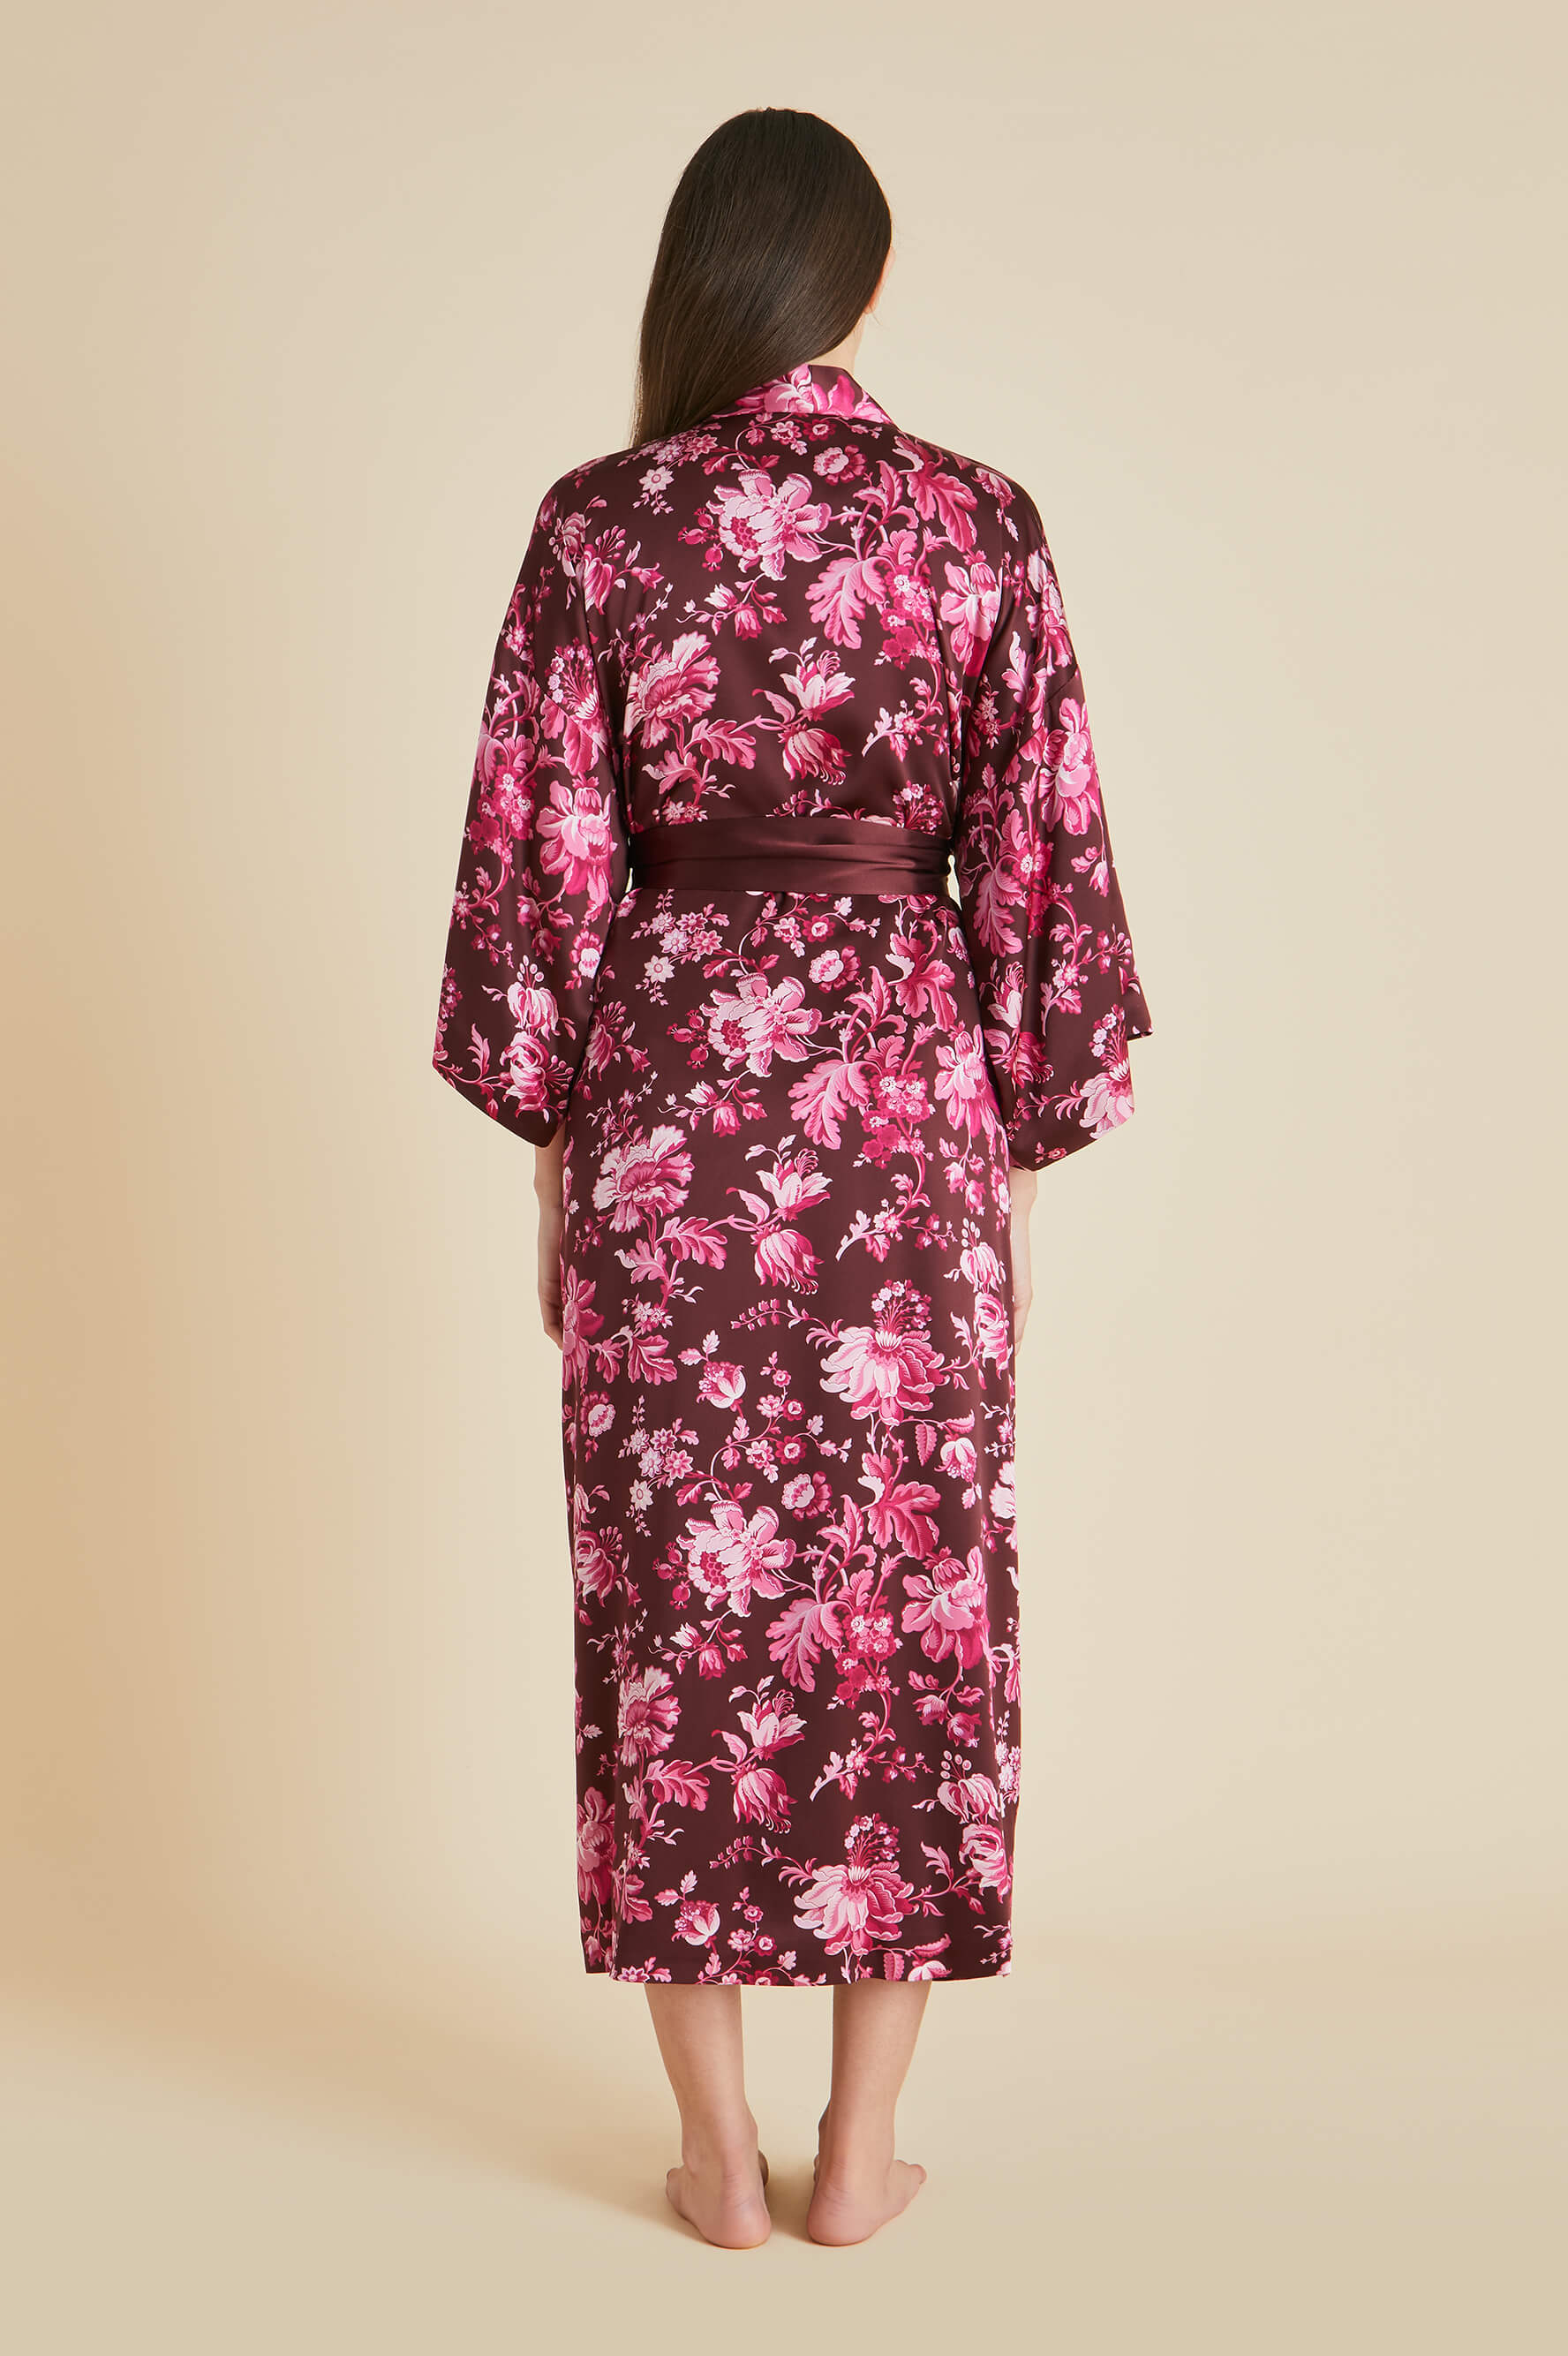 Queenie Aphrodite Burgundy Floral Robe in Silk Satin